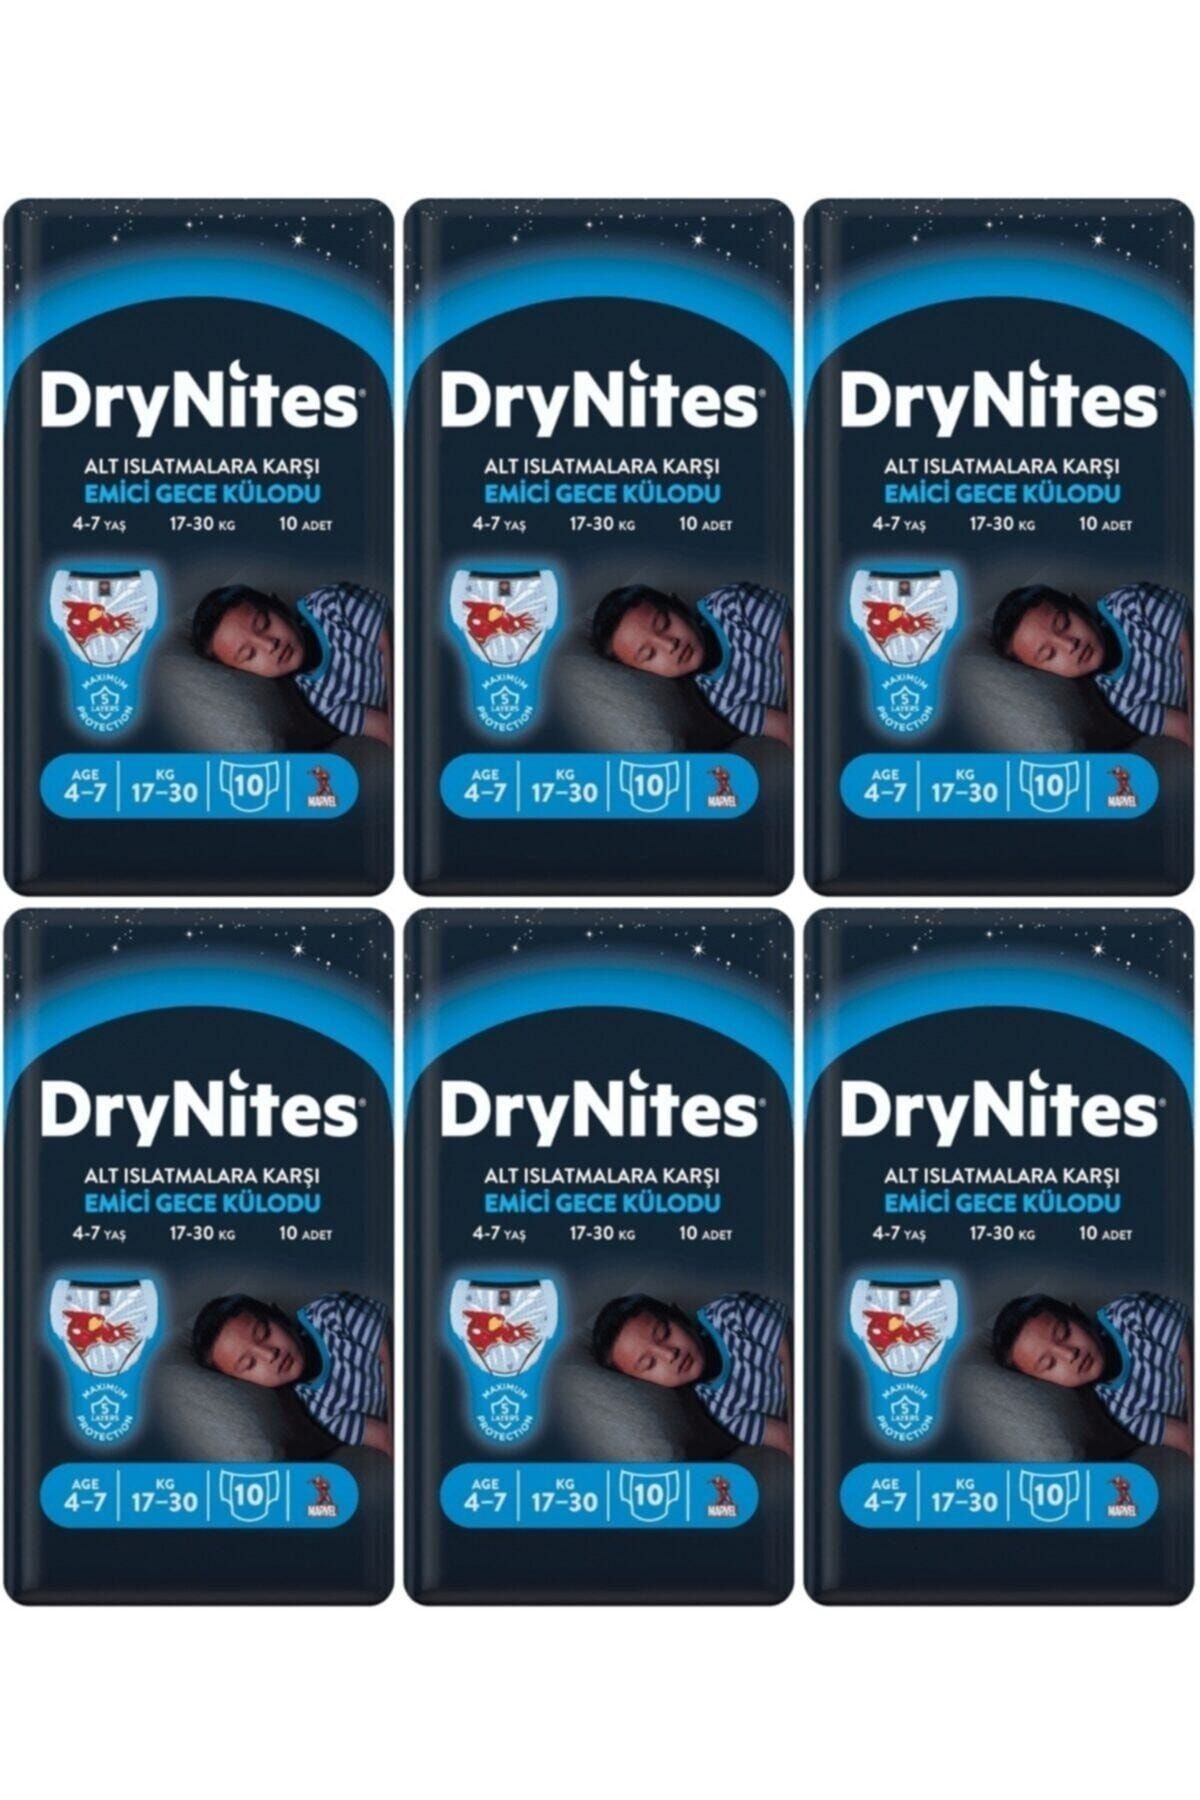 DryNites Erkek Emici Gece Külodu 4-7 Yaş 60 Adet